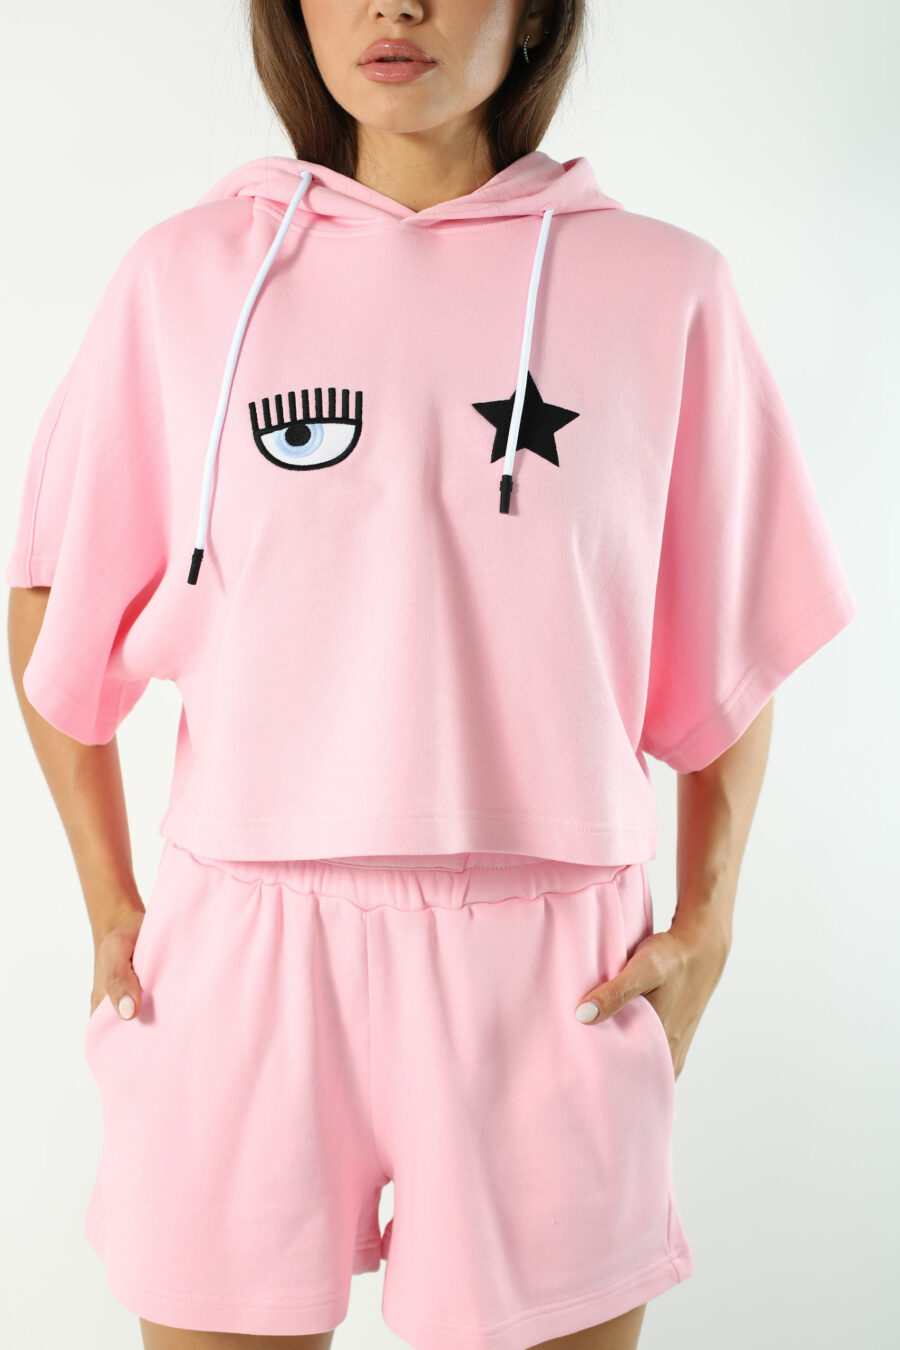 Sudadera manga corta rosa con capucha y logo ojo y estrella - Photos 2618